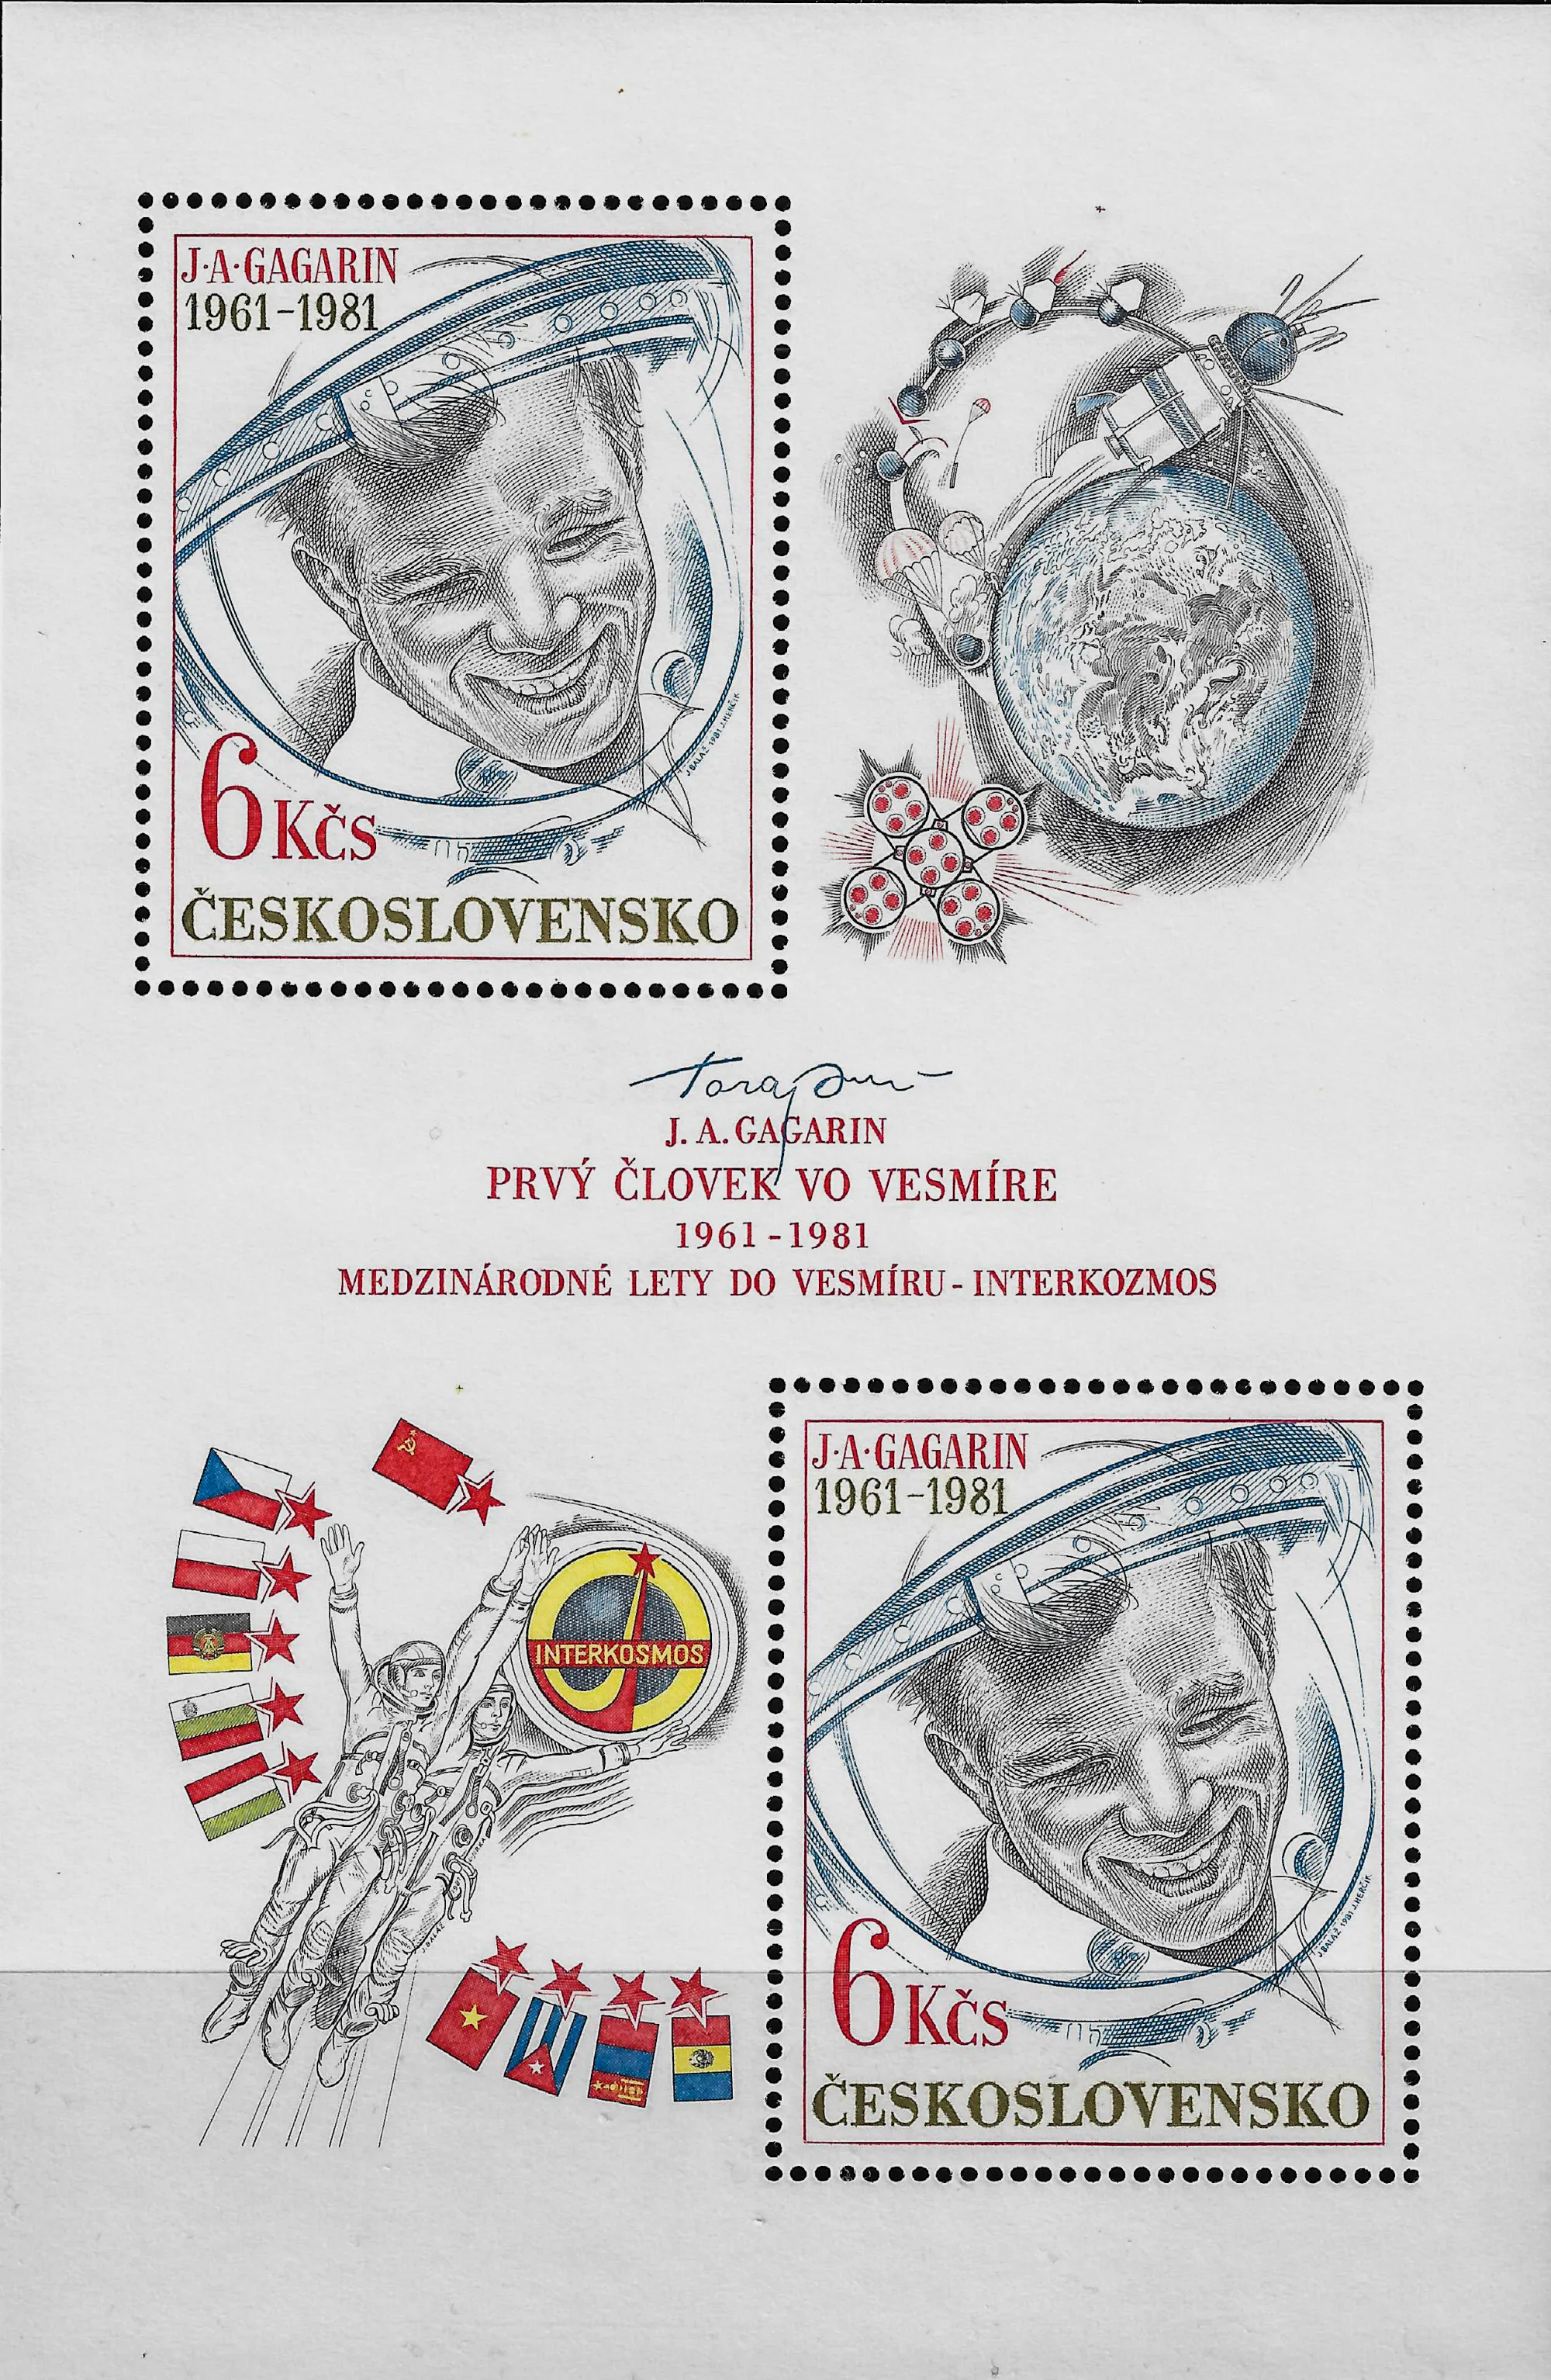 捷克斯洛伐克发行的加加林进入太空20周年纪念邮票